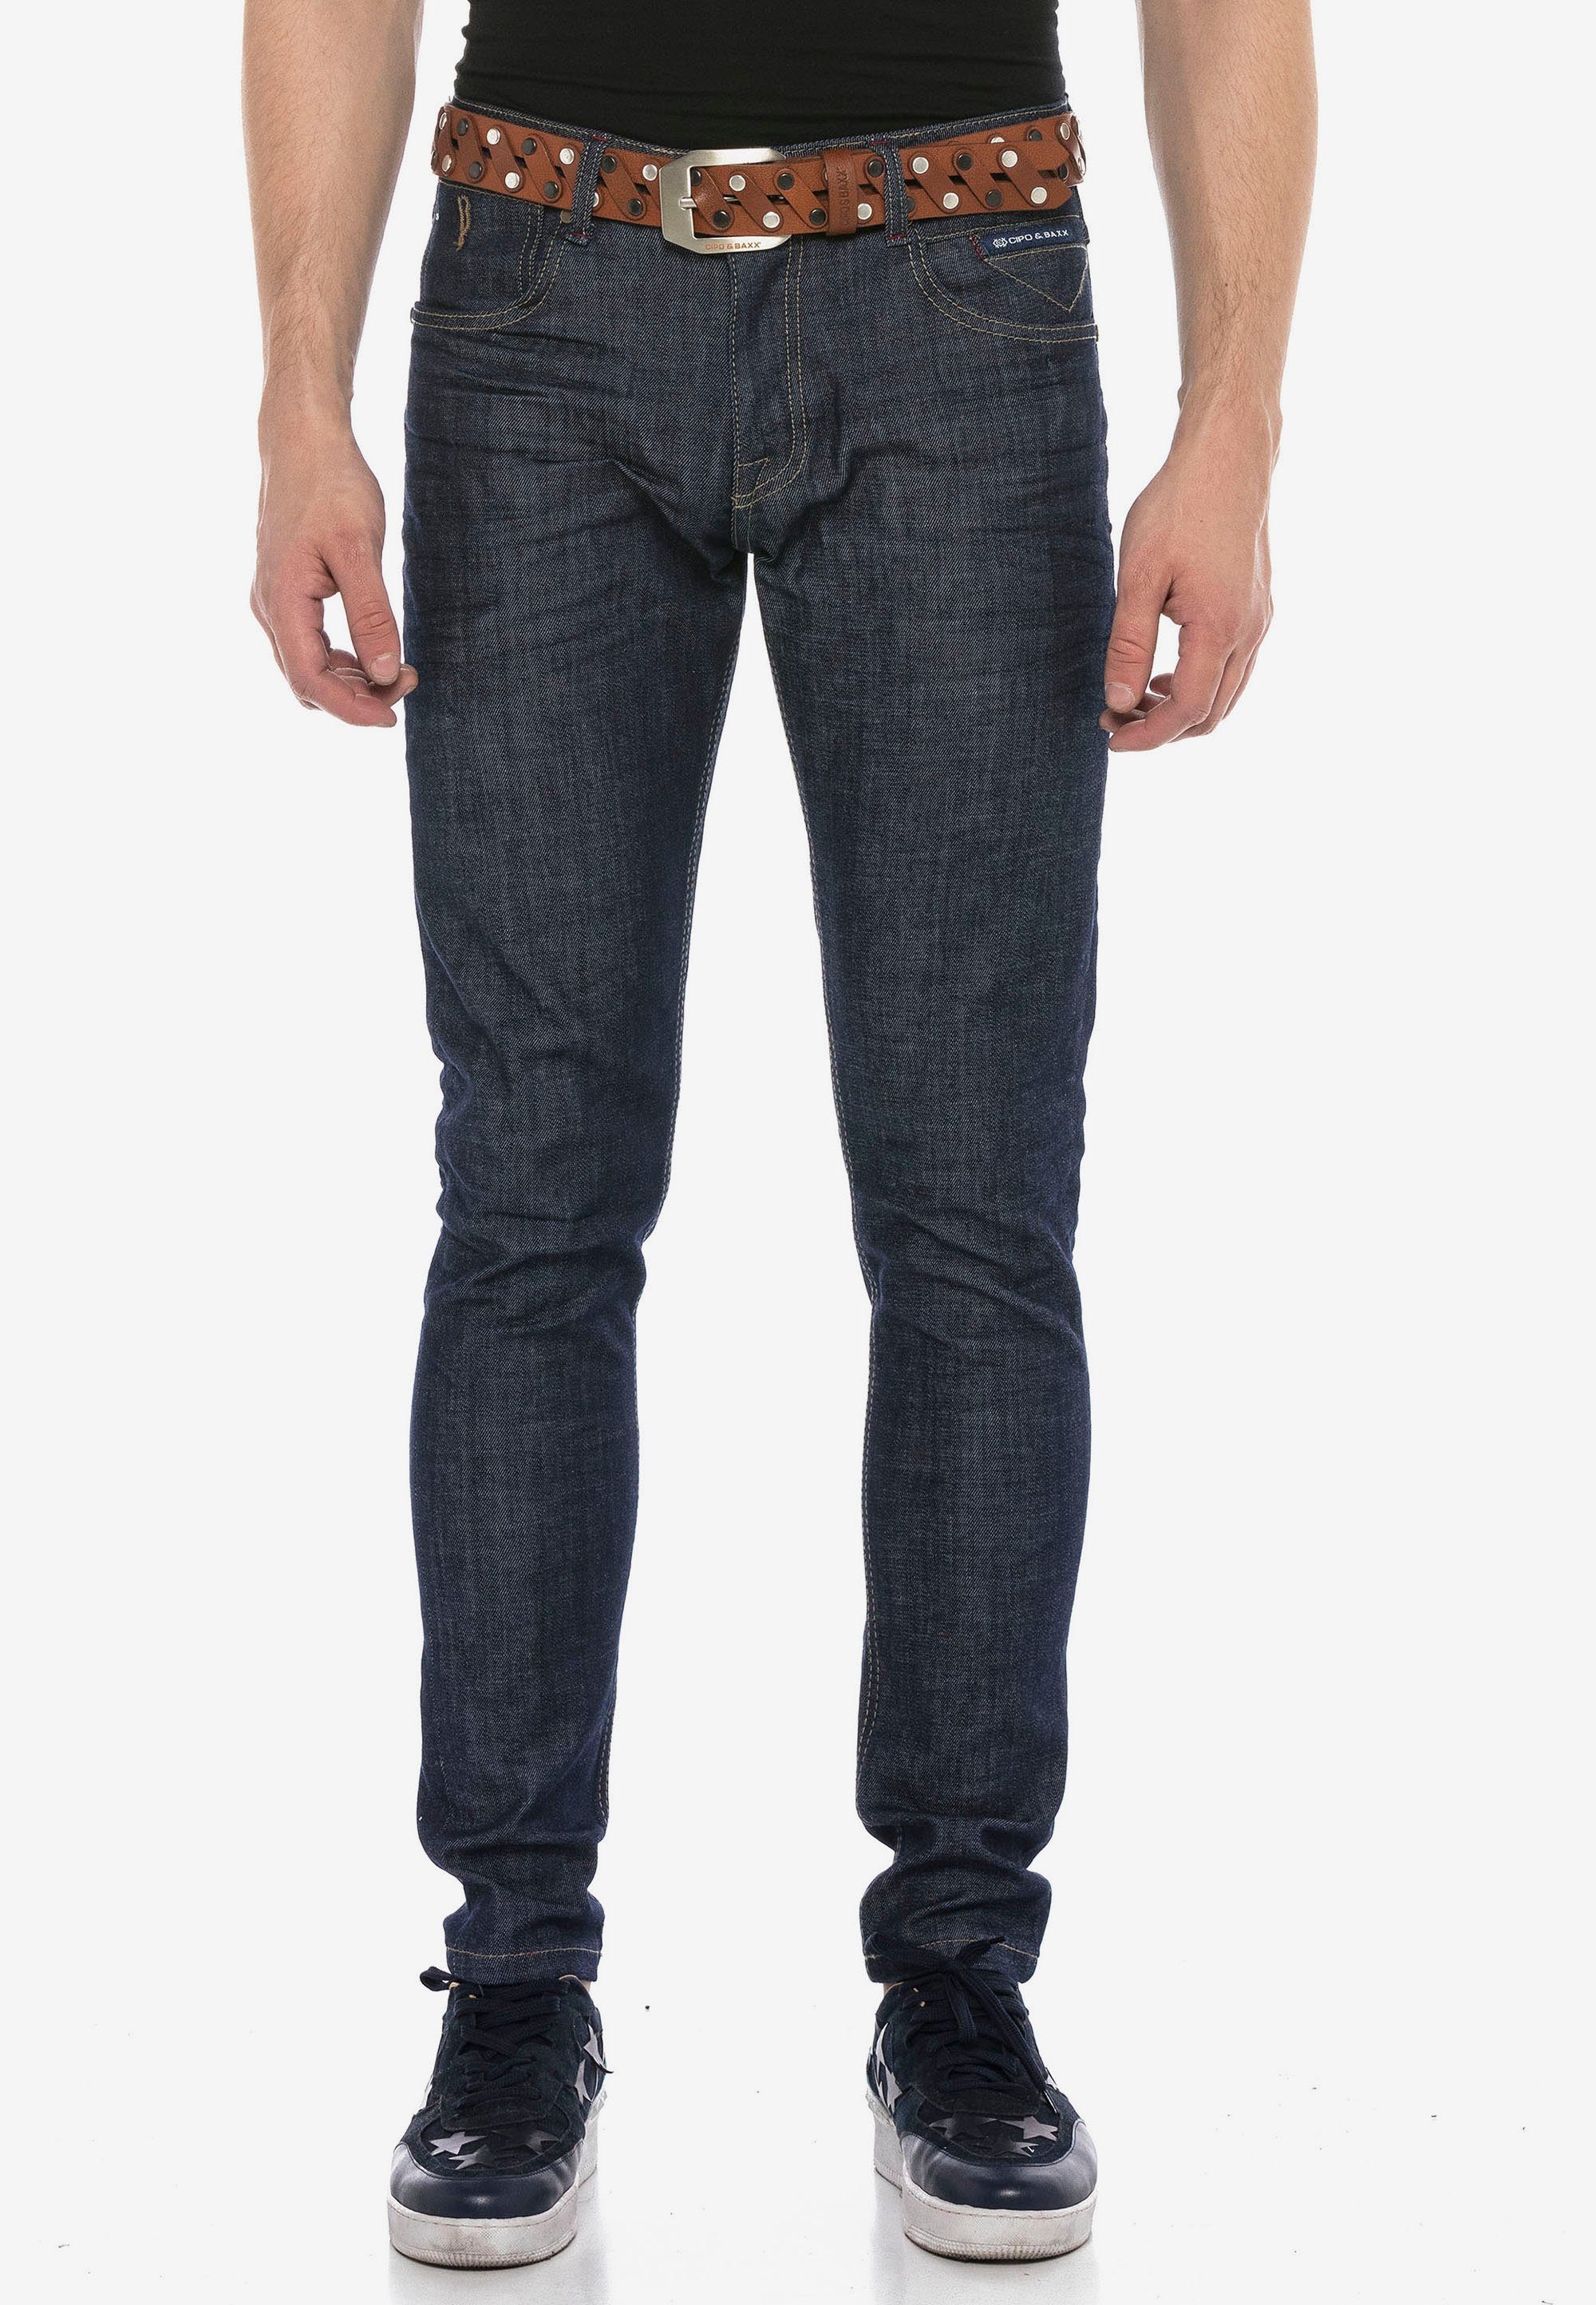 Cipo & Baxx Bequeme Jeans im klassischen Straight Fit Schnitt